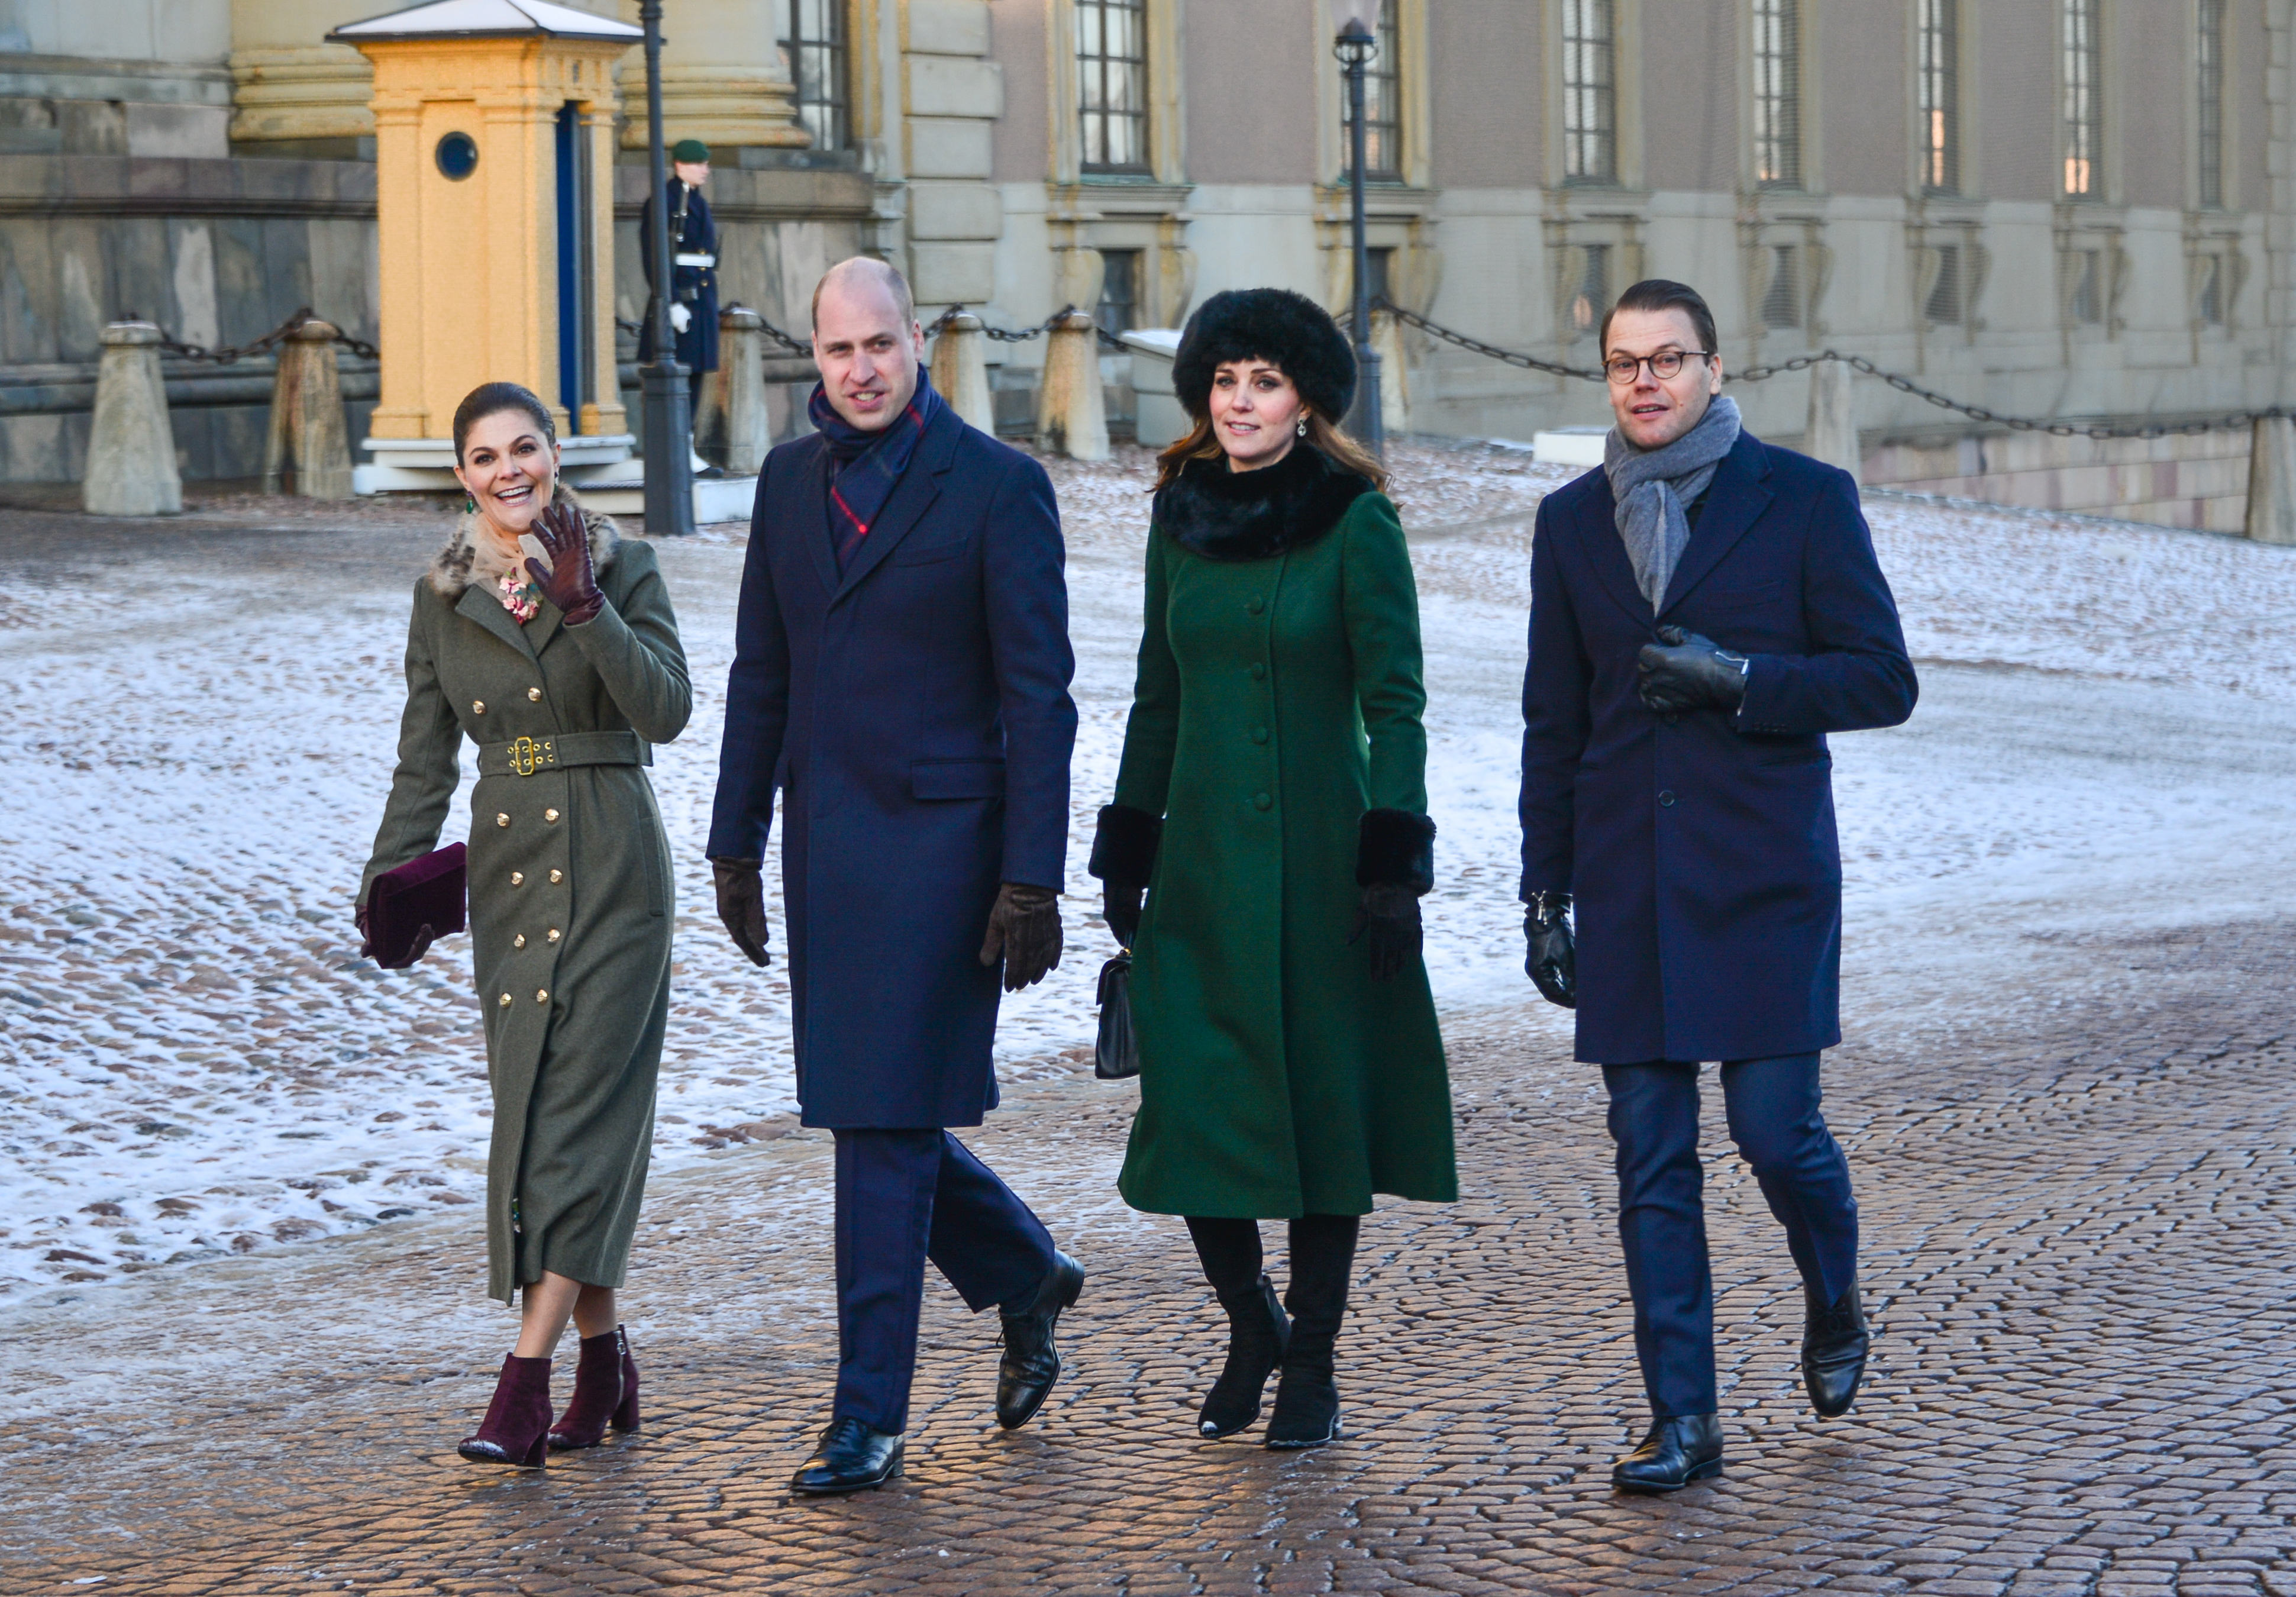 Duchess of Cambridge in Copenhagen today!